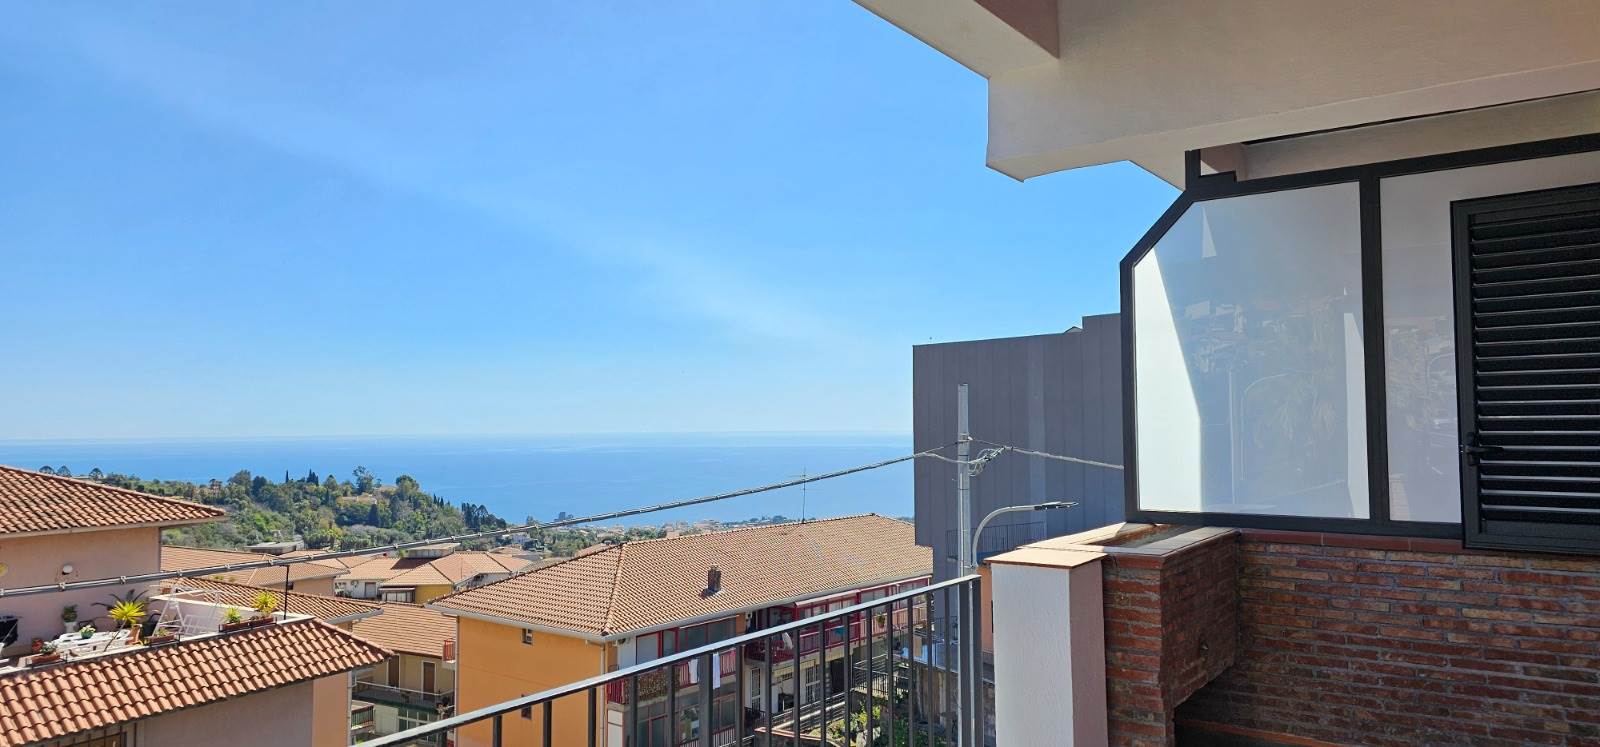 Appartamento in vendita a Aci Castello, 3 locali, zona razzi, prezzo € 126.000 | PortaleAgenzieImmobiliari.it